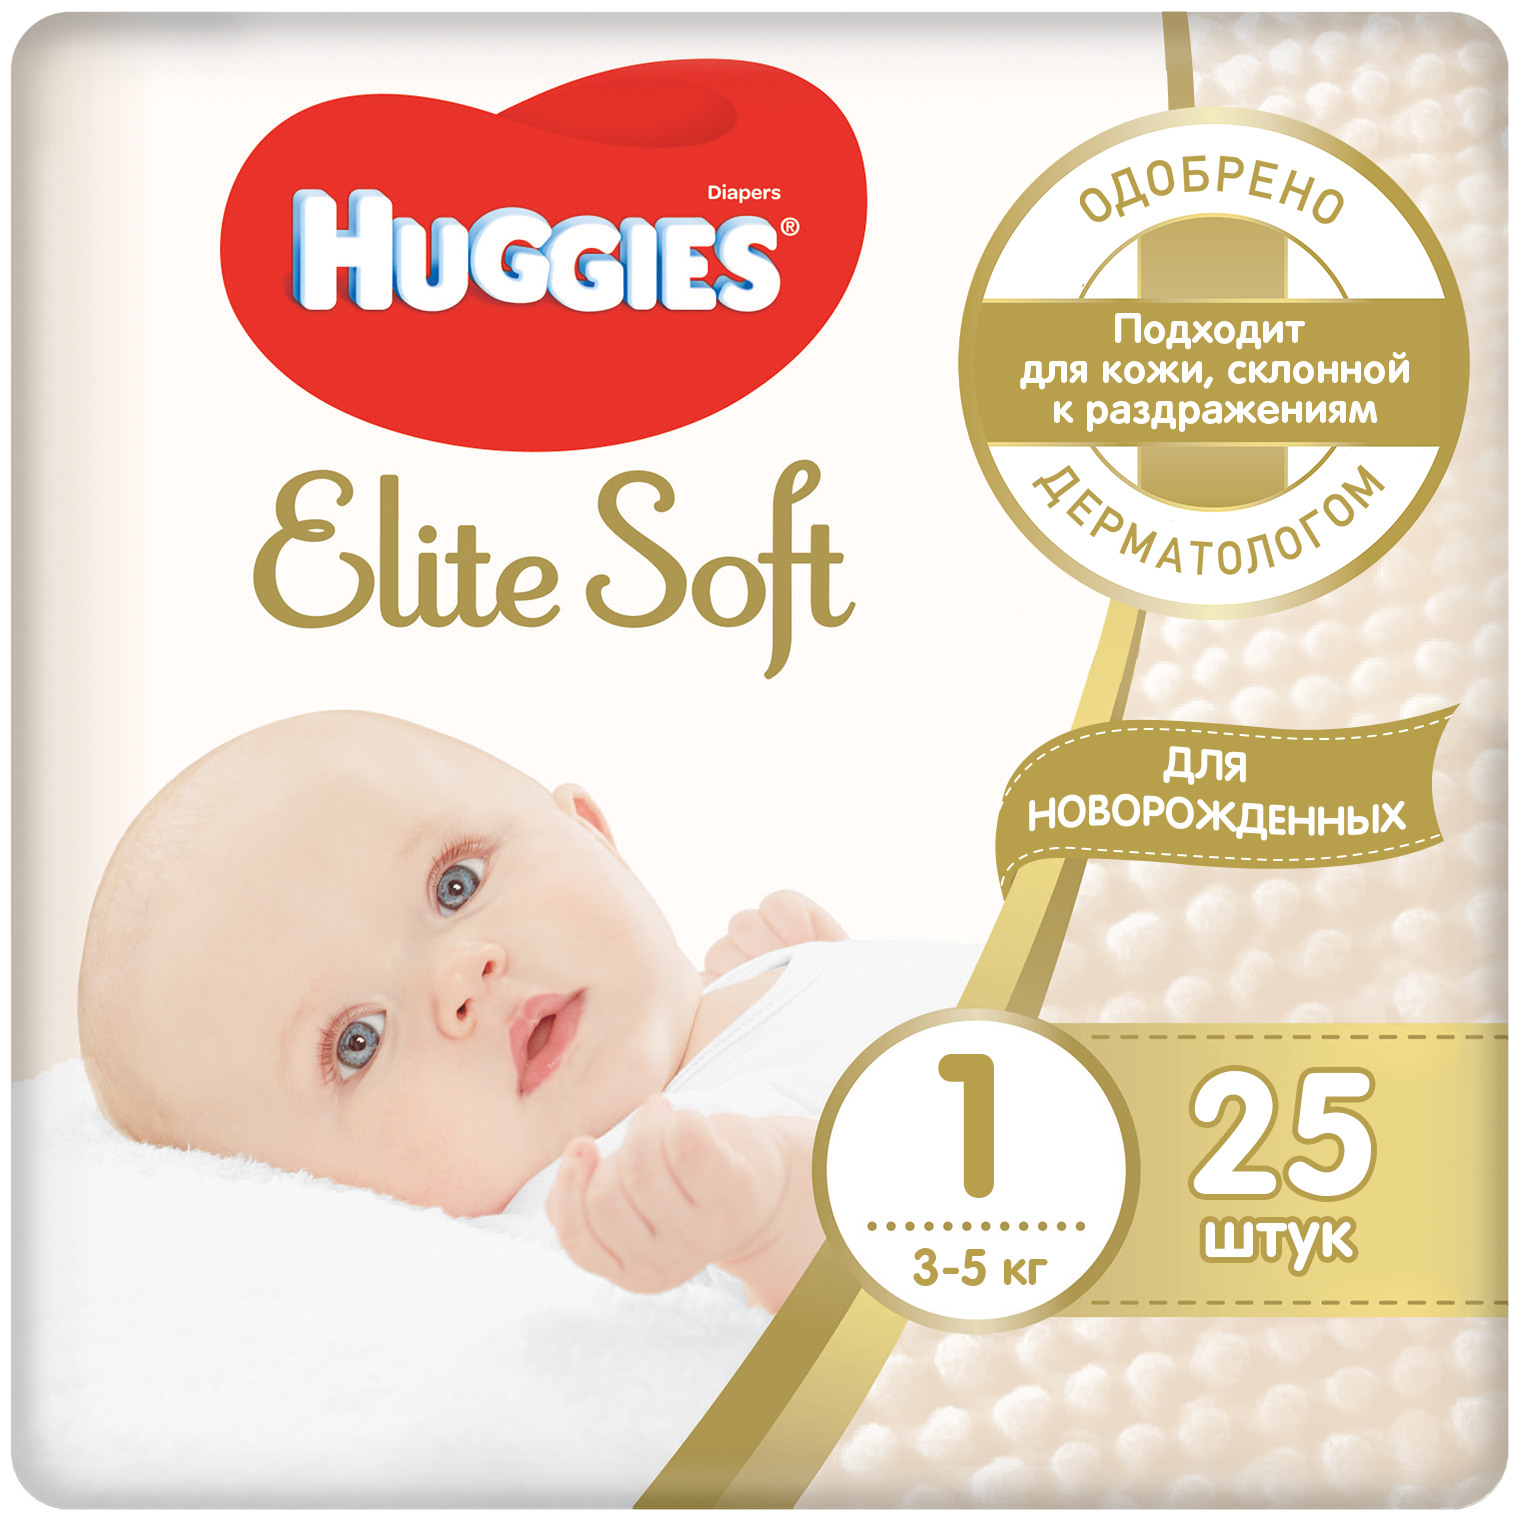 Huggies подгузники Elite Soft 1 (3-5 кг), 100 шт.